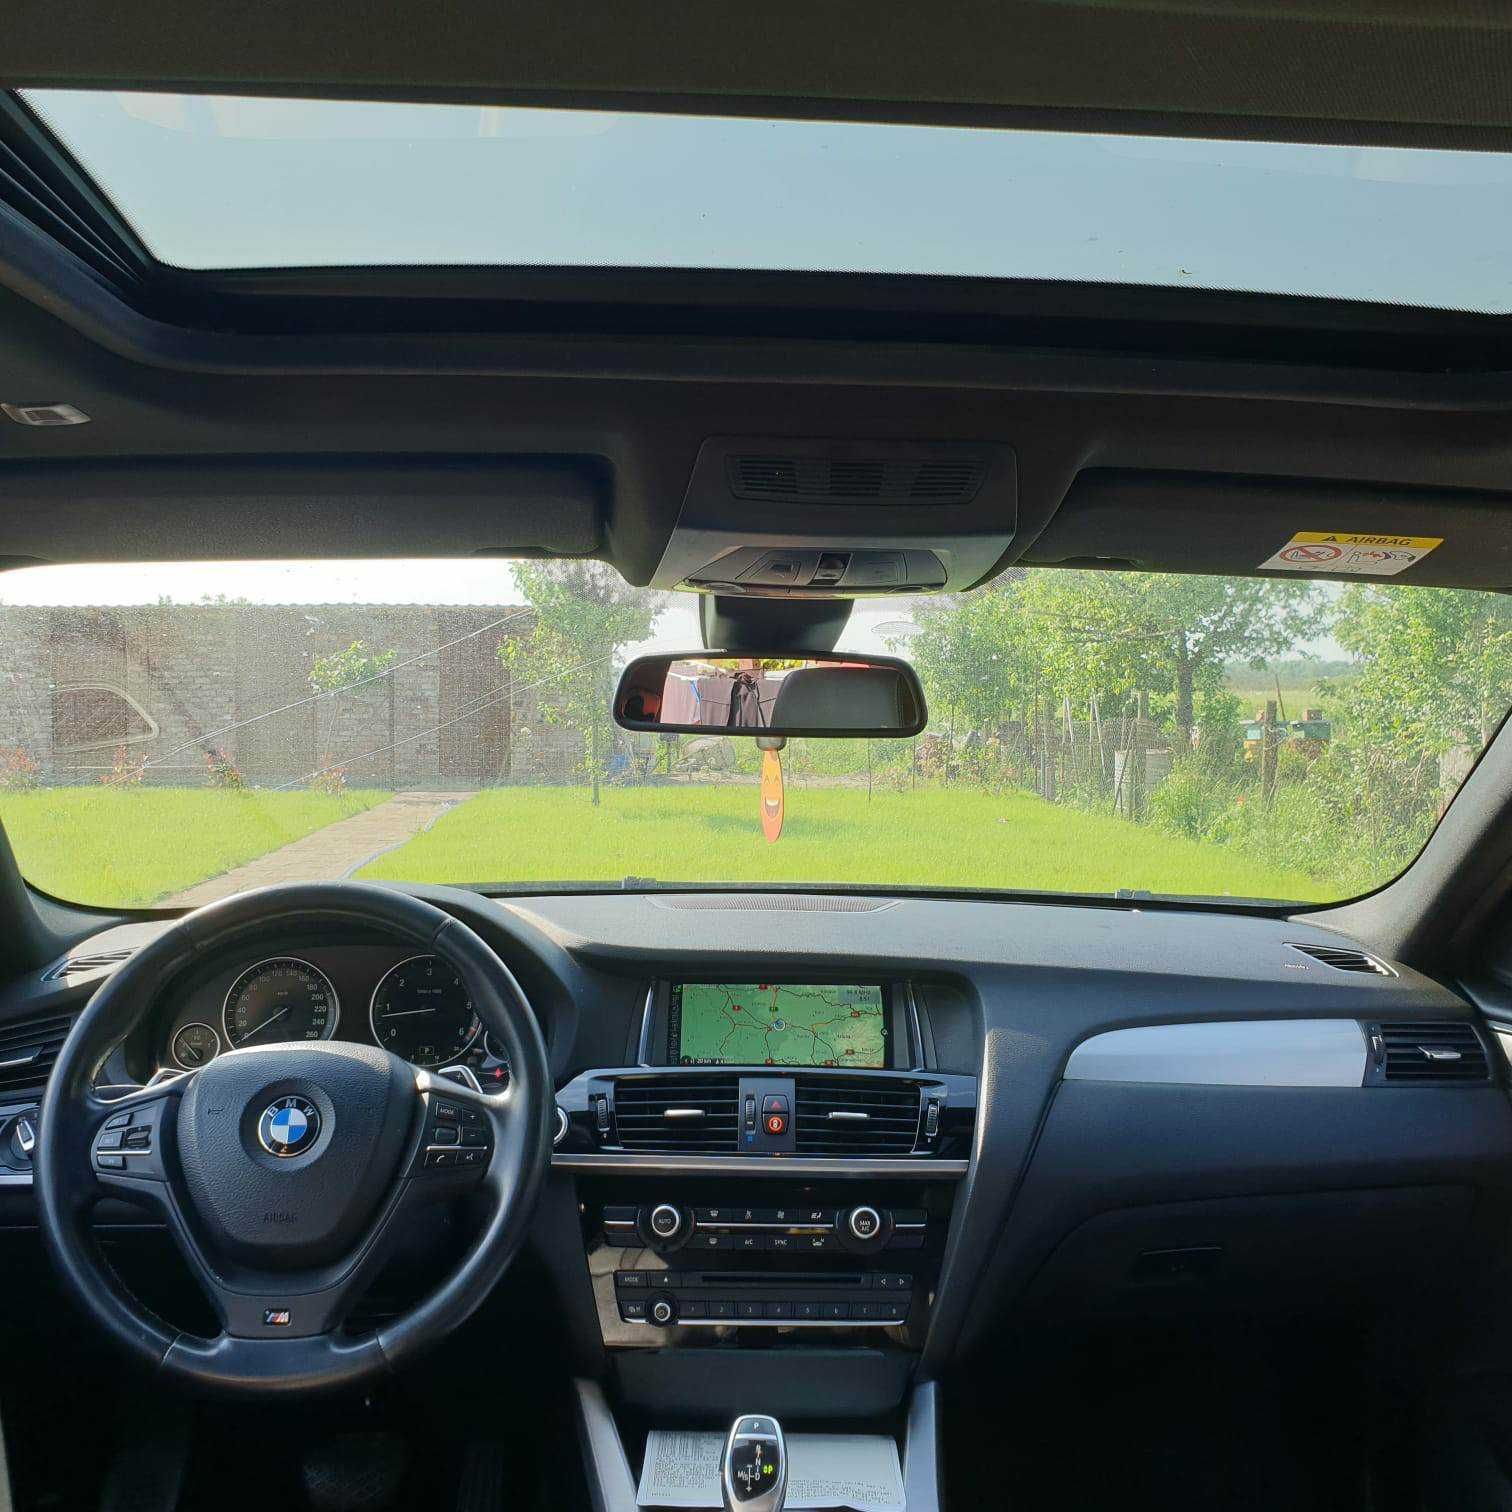 BMW X4 3.0 Diesel 258 Cp 2017 4x4